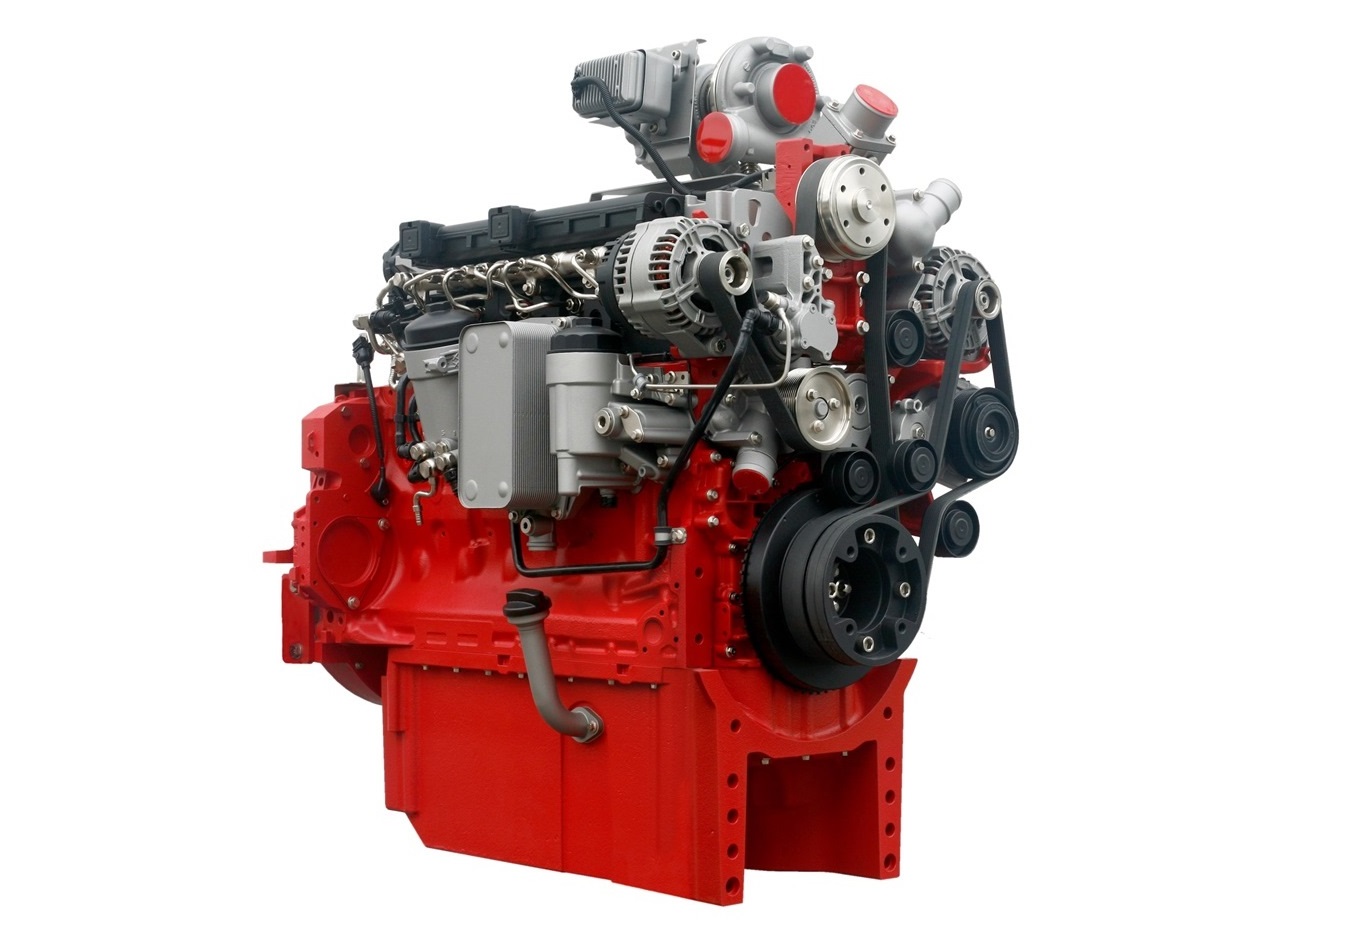 A jövő traktormotorja megérkezett - Deutz dízelmotor felelt meg elsőként a Stage V emissziós előírásoknak